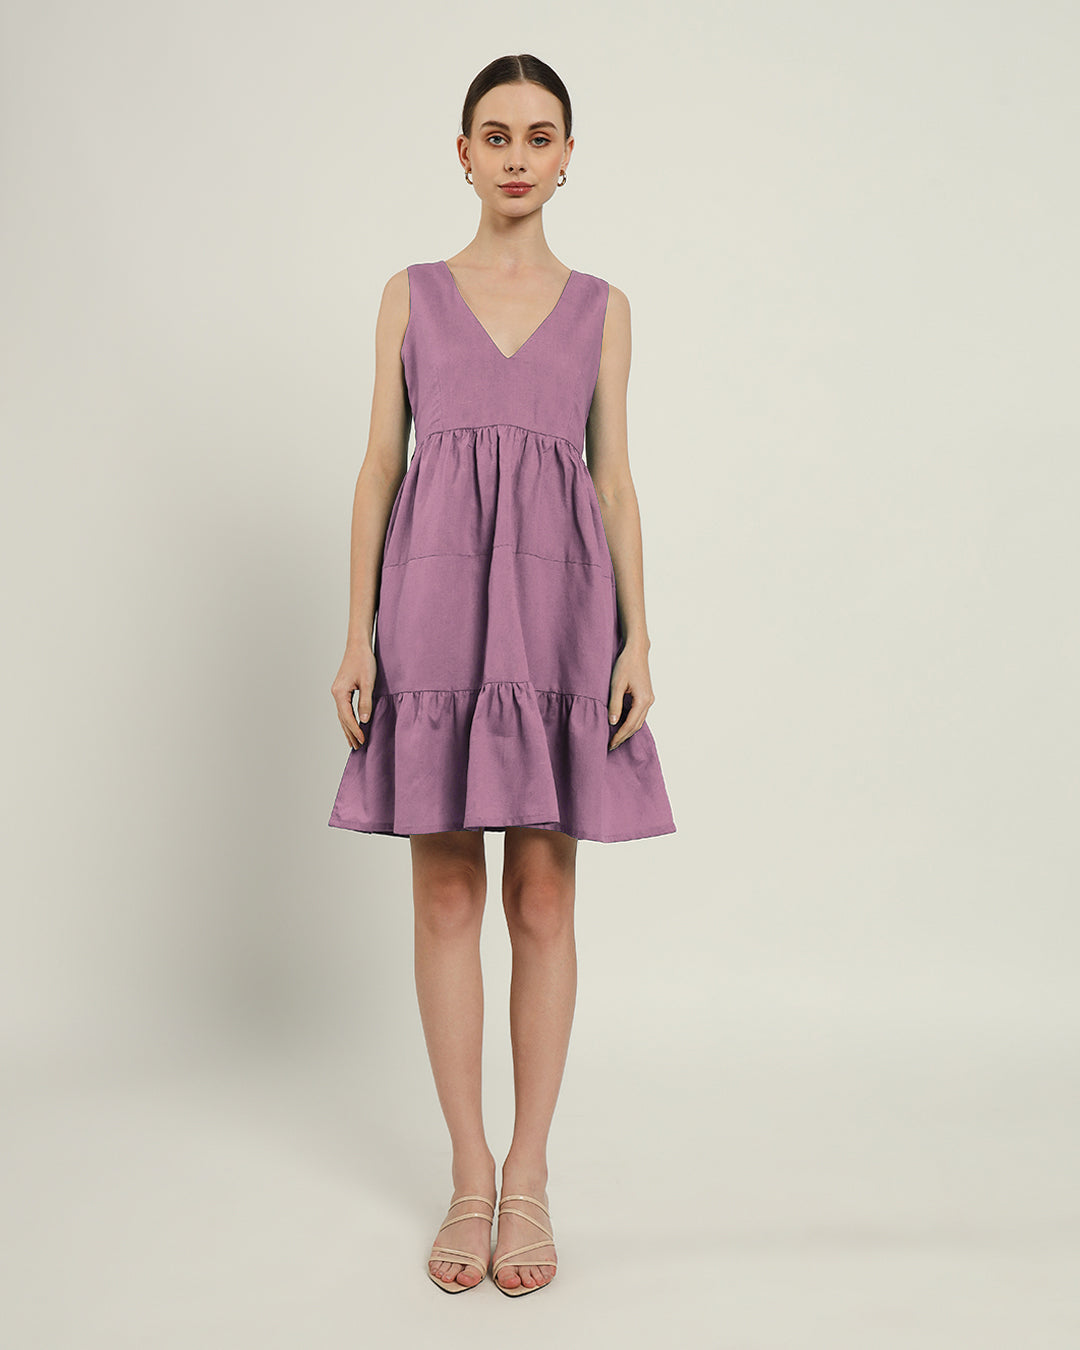 The Minsk Purple Swirl Dress